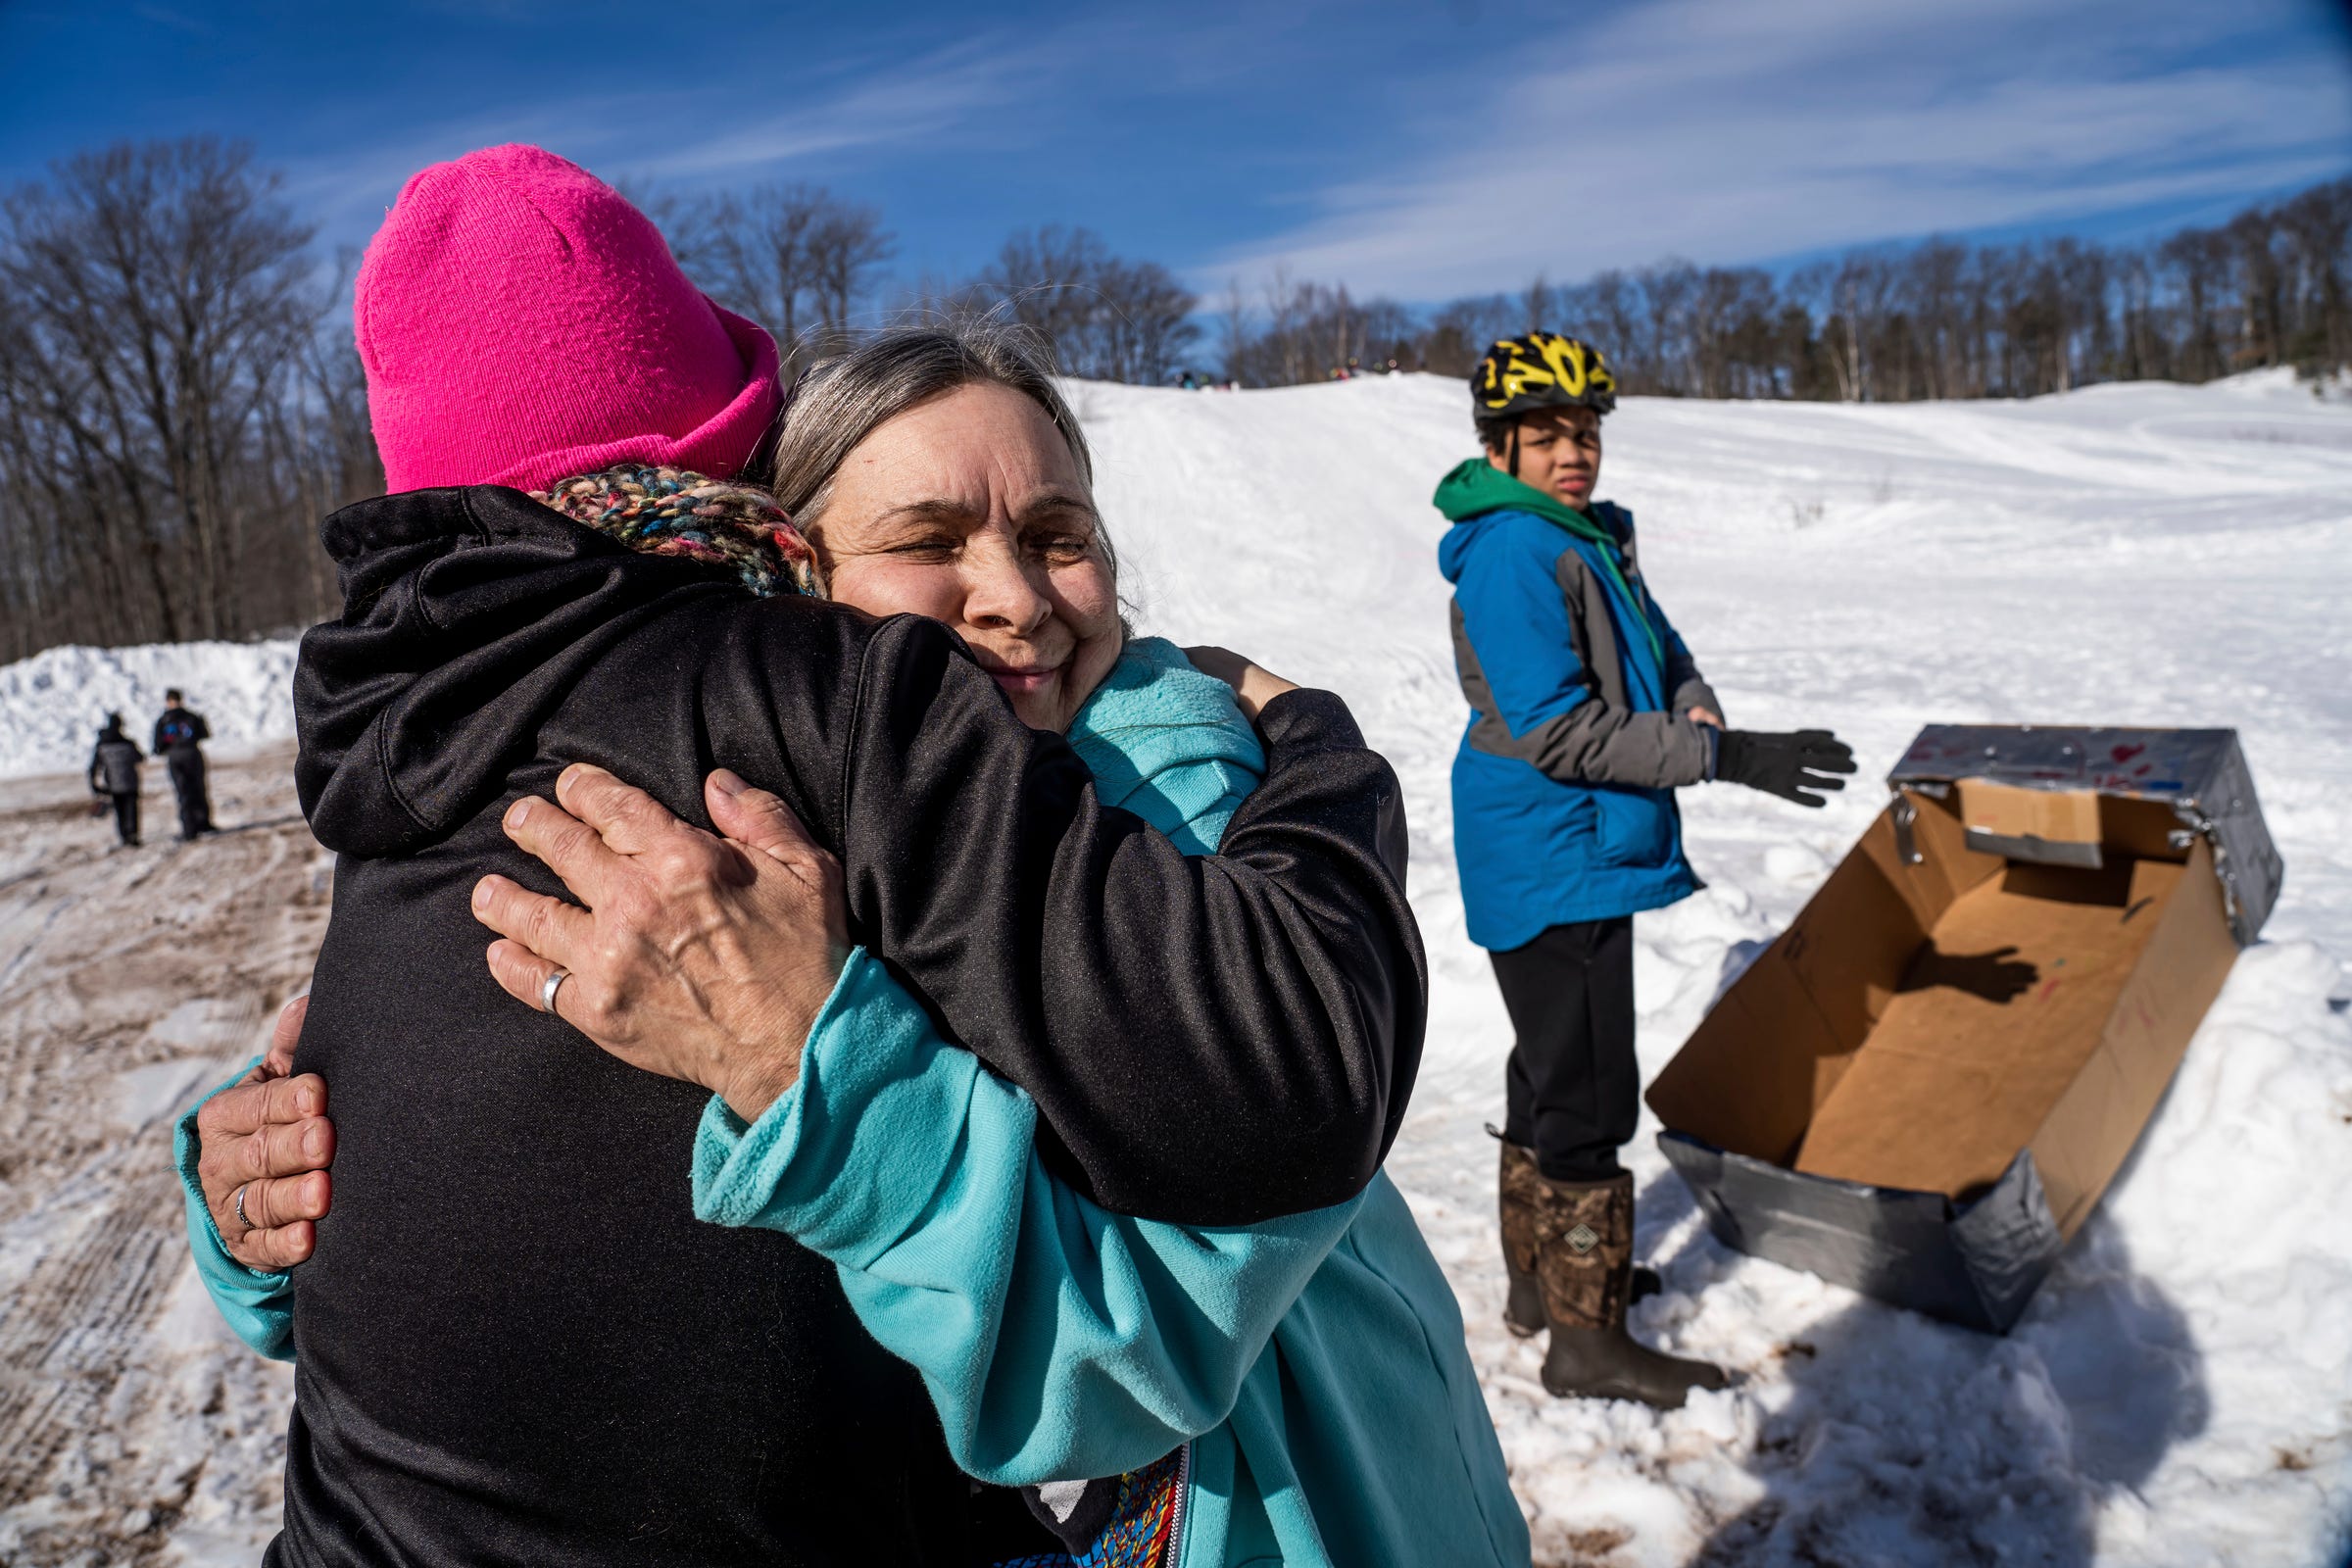 Geriann Bialkowski, center, hugs Denise Venturato as they waited for the start of the K.I. Sawyer Cardboard Sled Races on Feb. 11, 2023.
